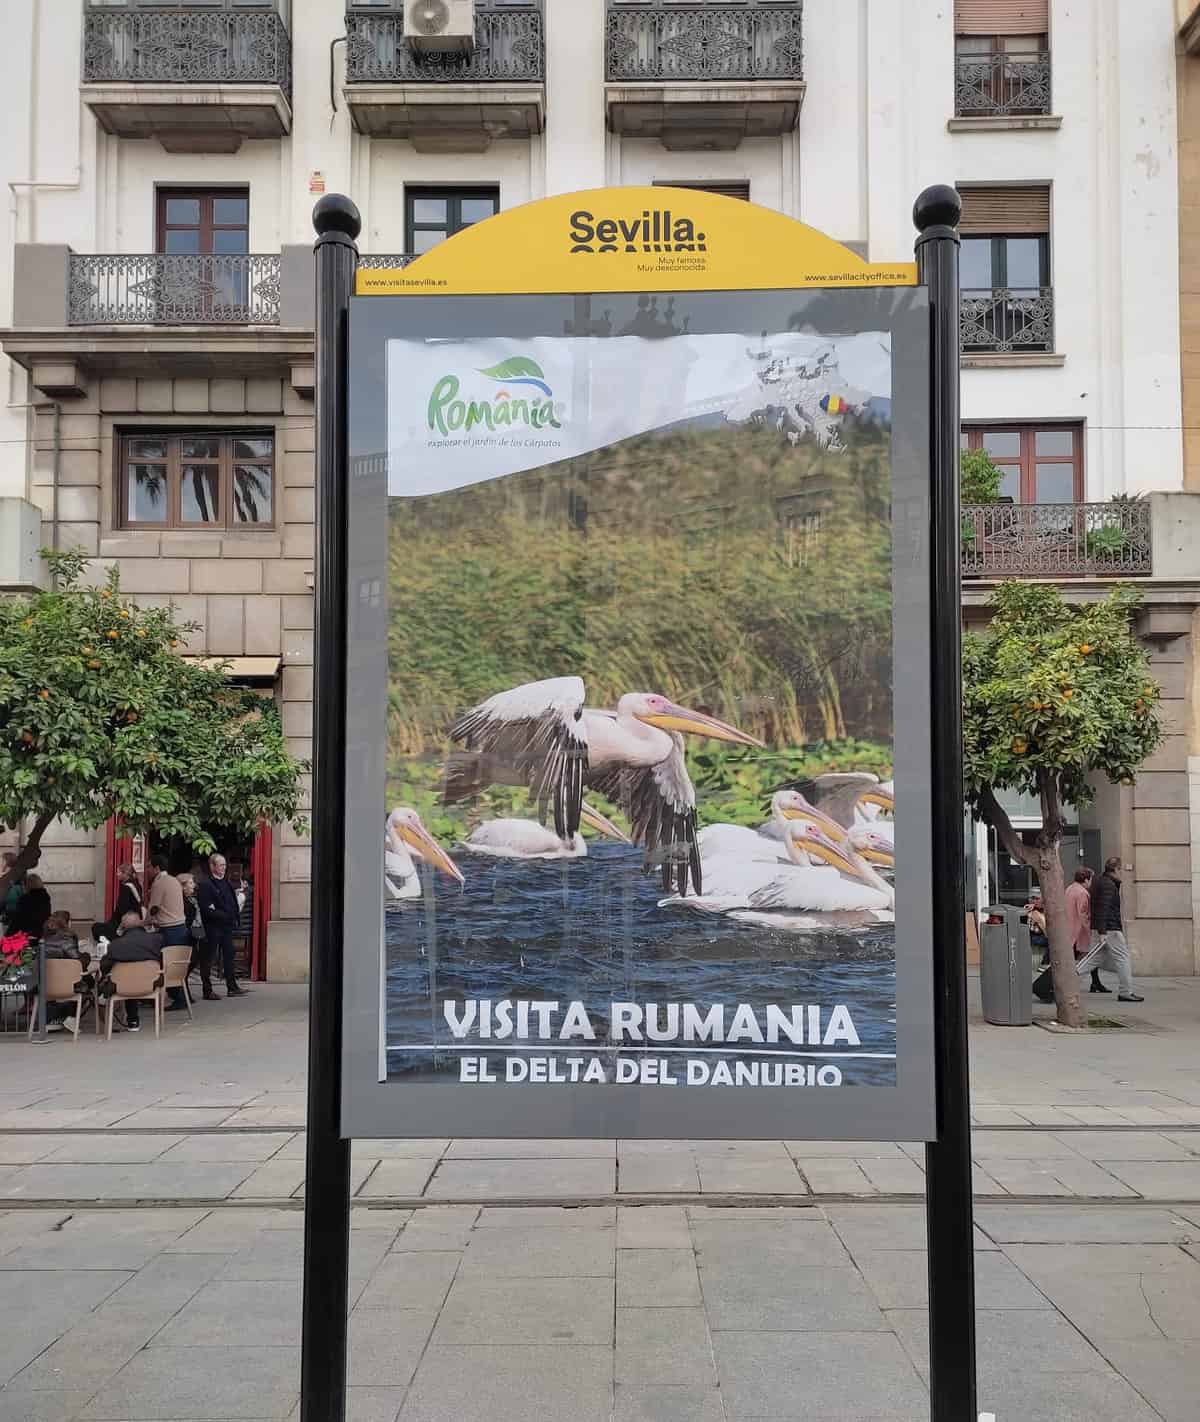 destinații turistice din românia, promovate în sevilla - imagini cu transfăgărășanul și biertan, amplasate pe străzi